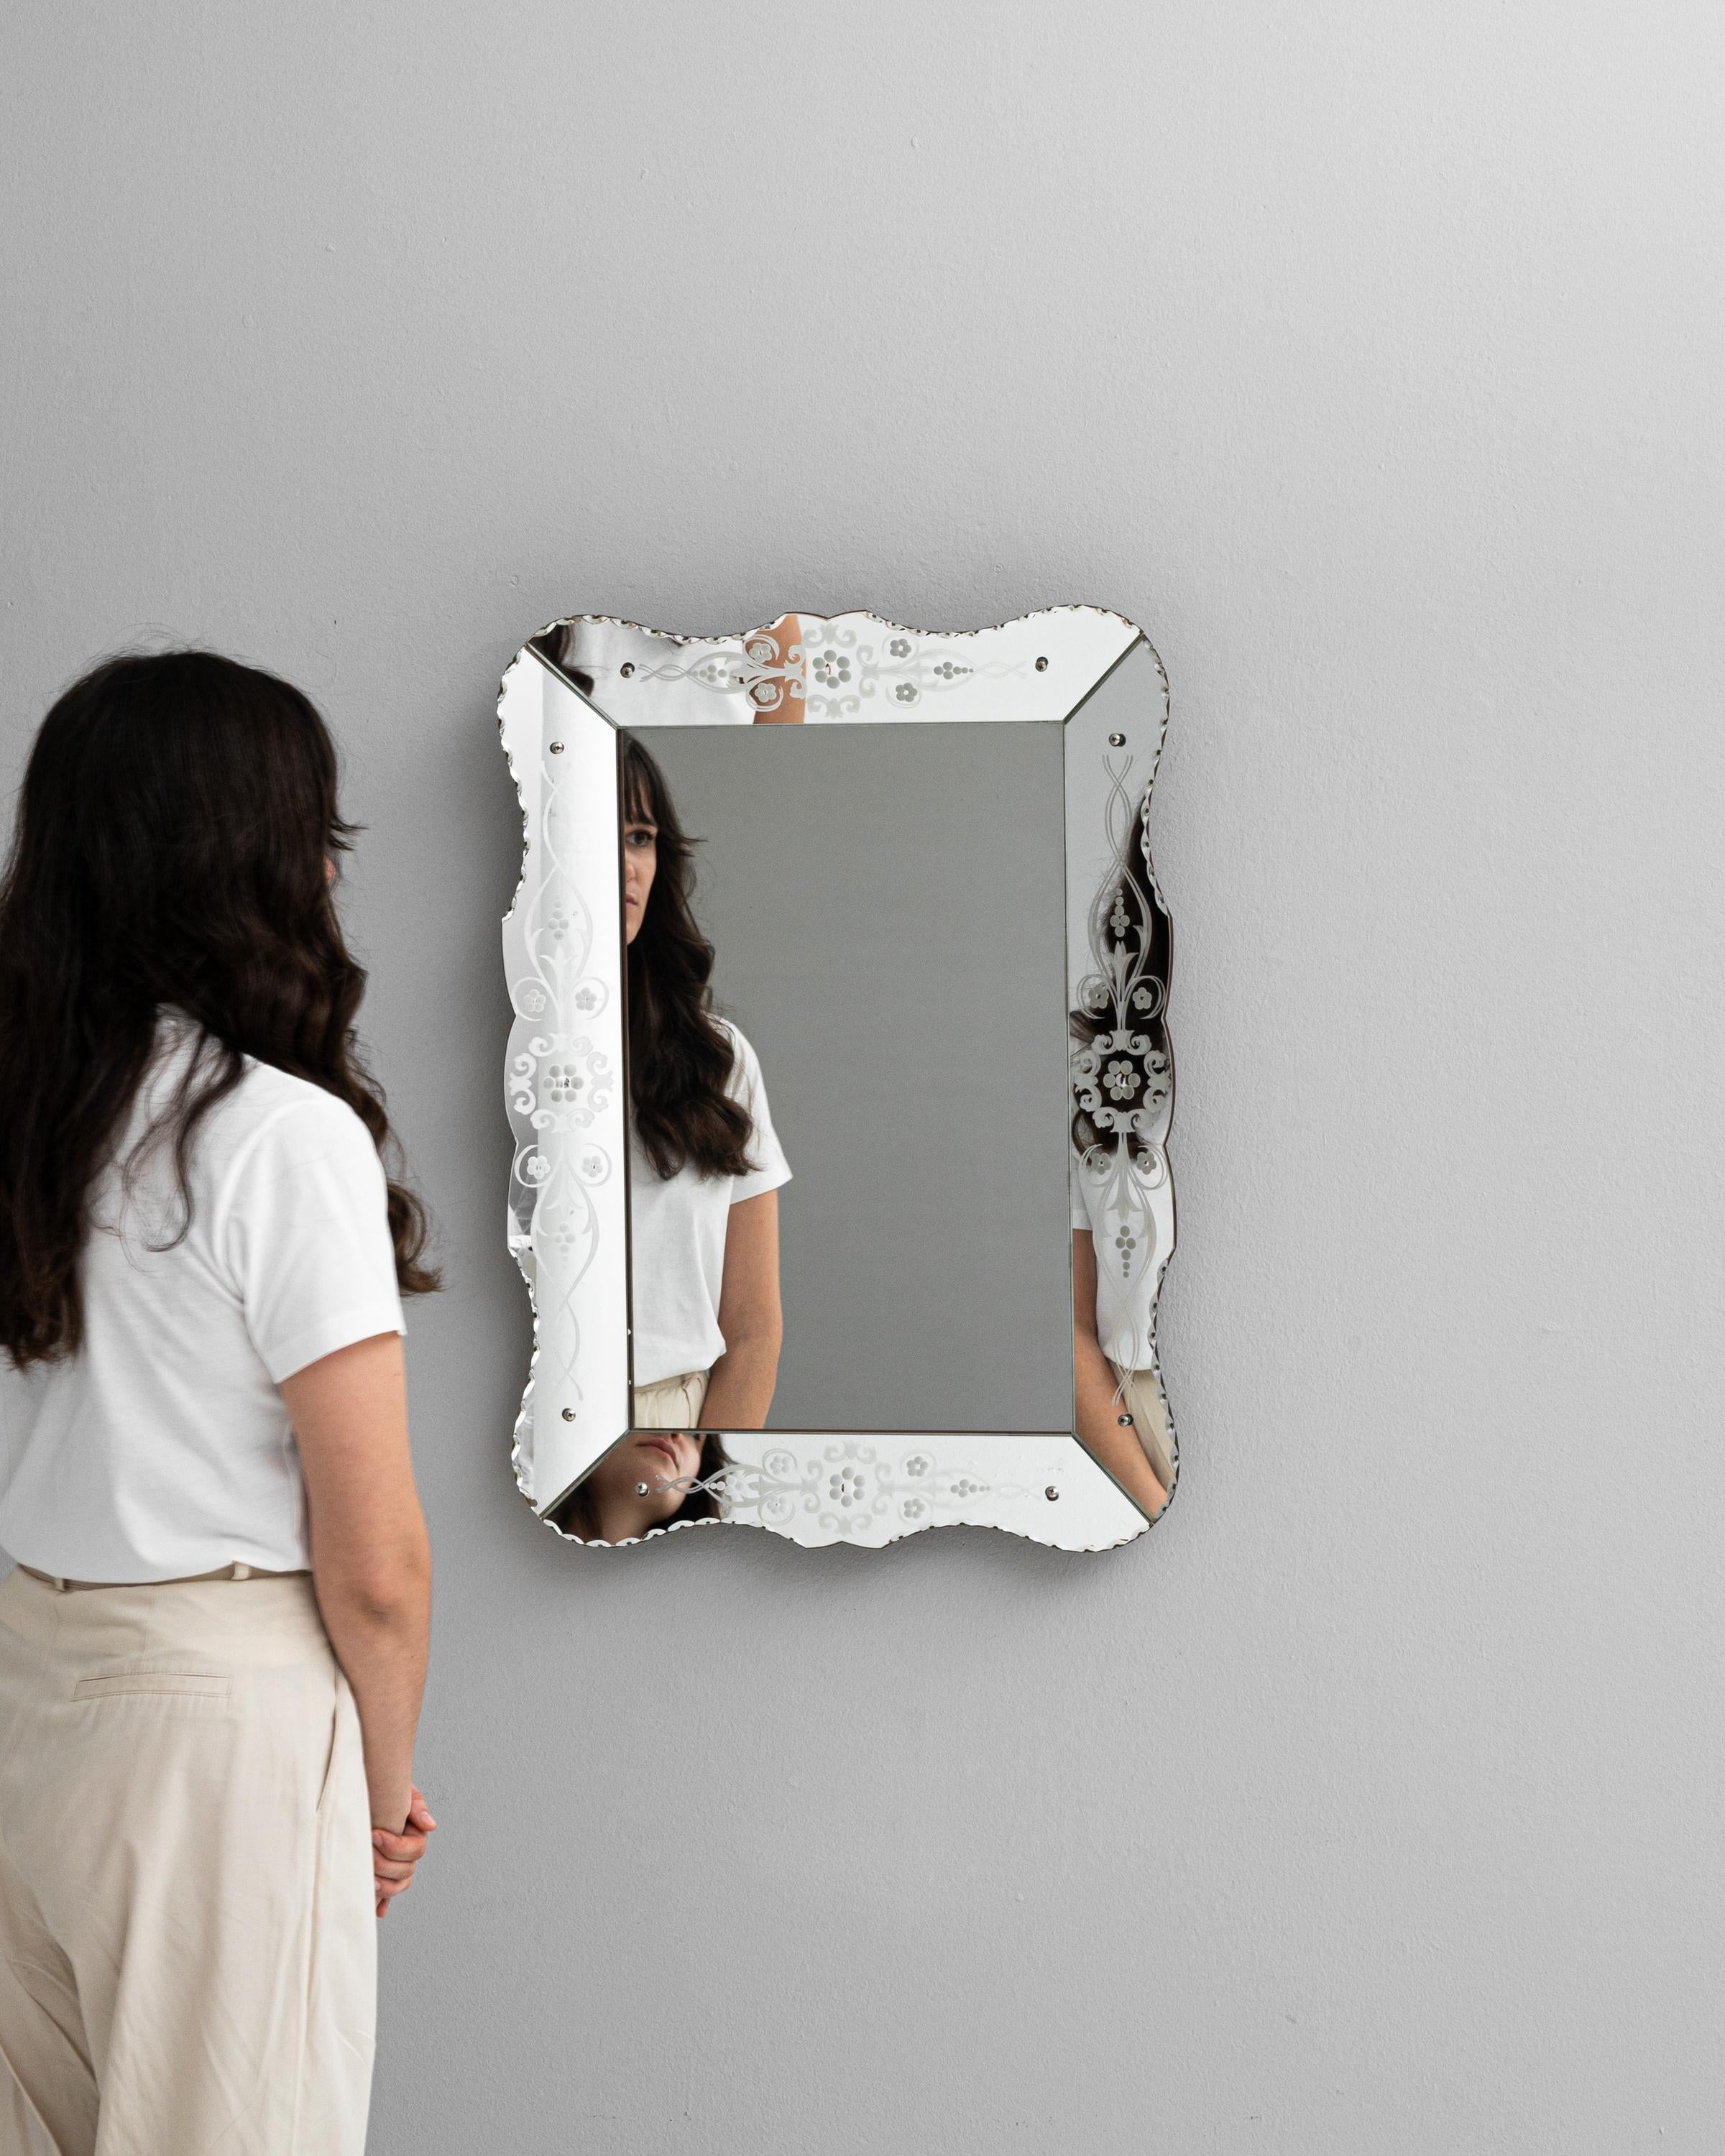 Découvrez le charme du design italien avec cet exquis miroir du XXe siècle, qui témoigne d'une élégance intemporelle. Sa surface réfléchissante, bordée d'un cadre délicatement gravé et orné de subtils motifs floraux, capture non seulement votre